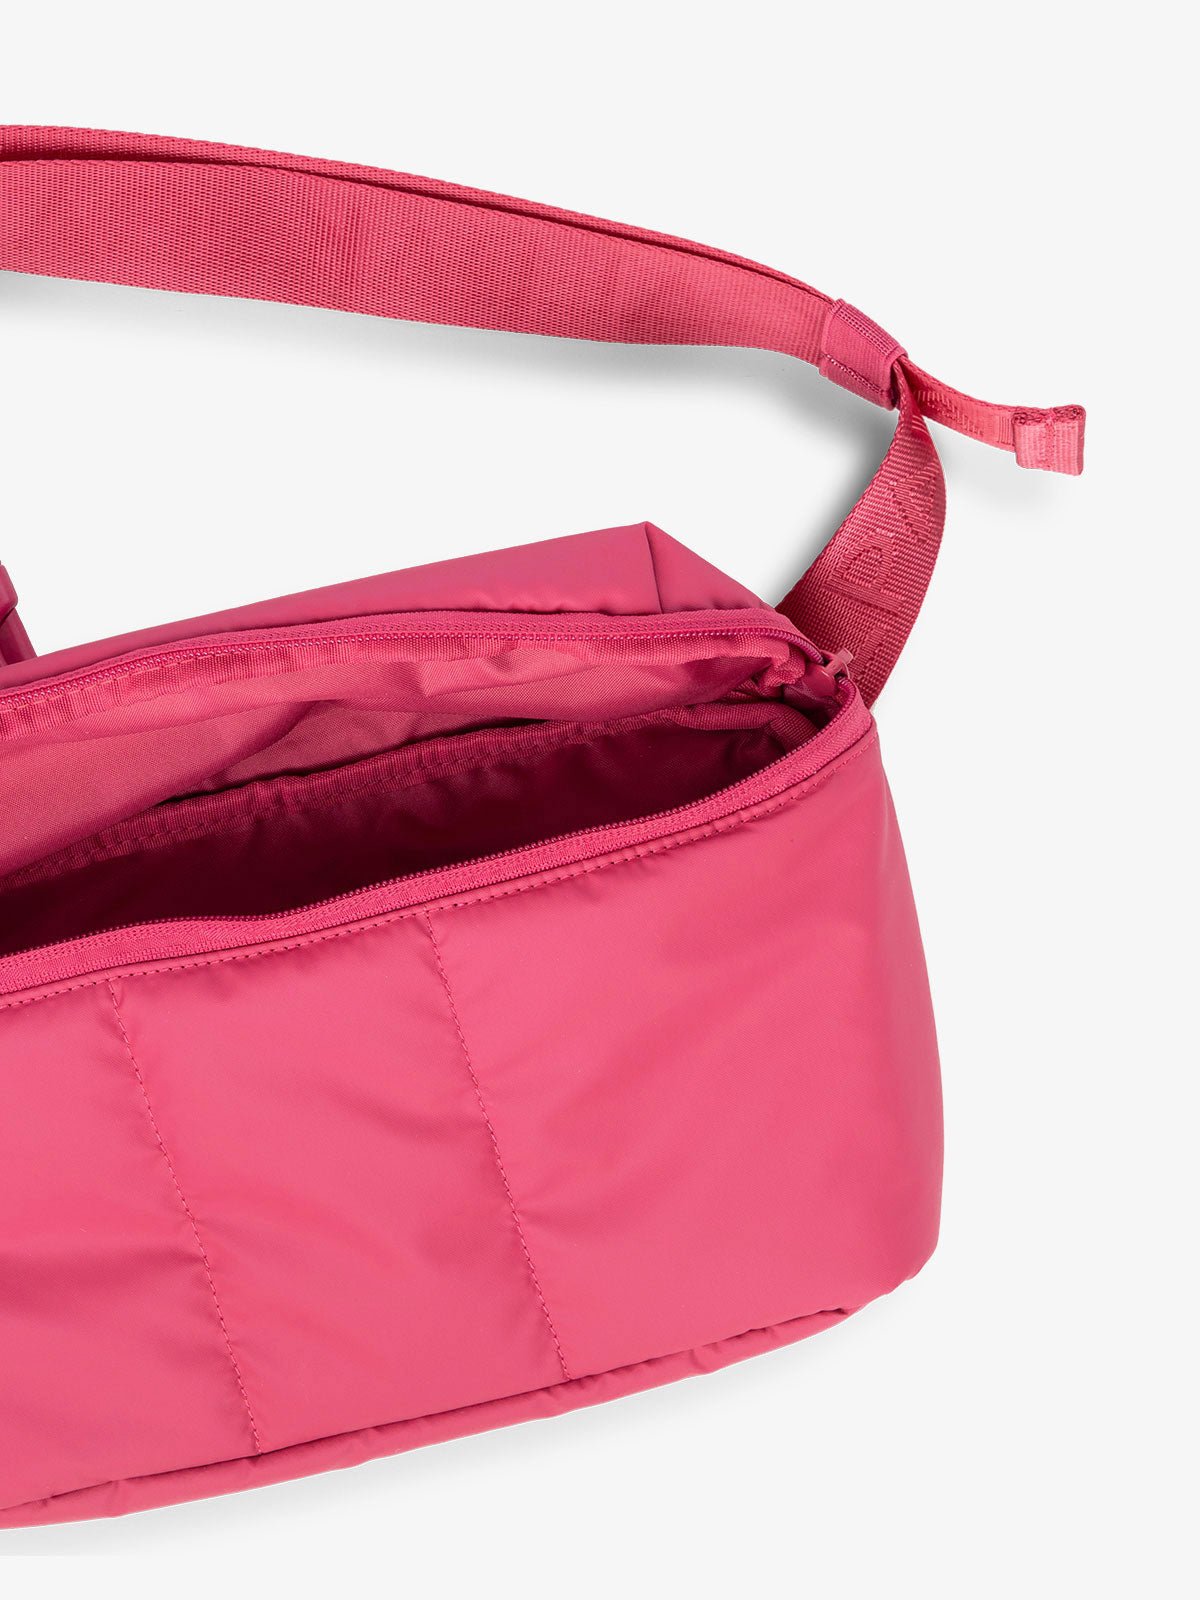 CALPAK Luka Belt Bag close up interior and strap in pink dragonfruit